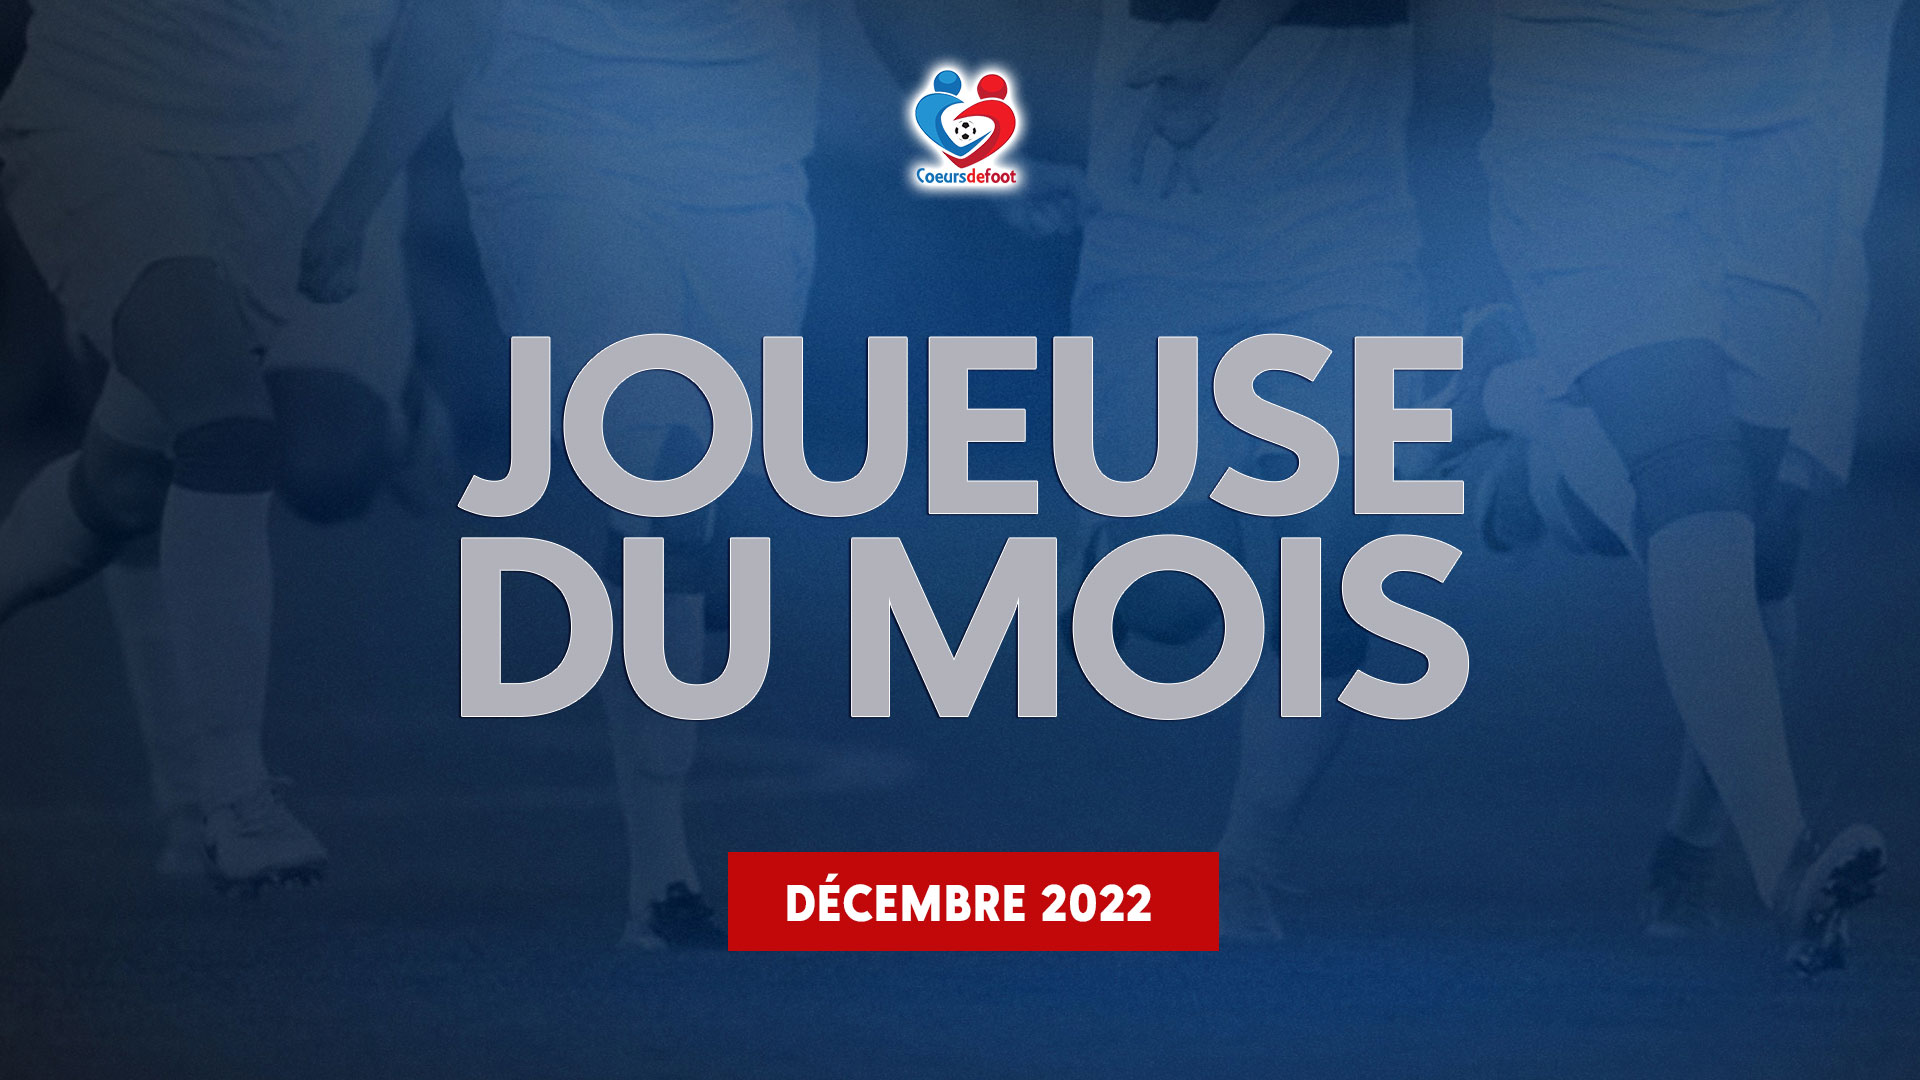 D1 - Découvrez la joueuse Cœurs de Foot du mois de décembre 2022 !